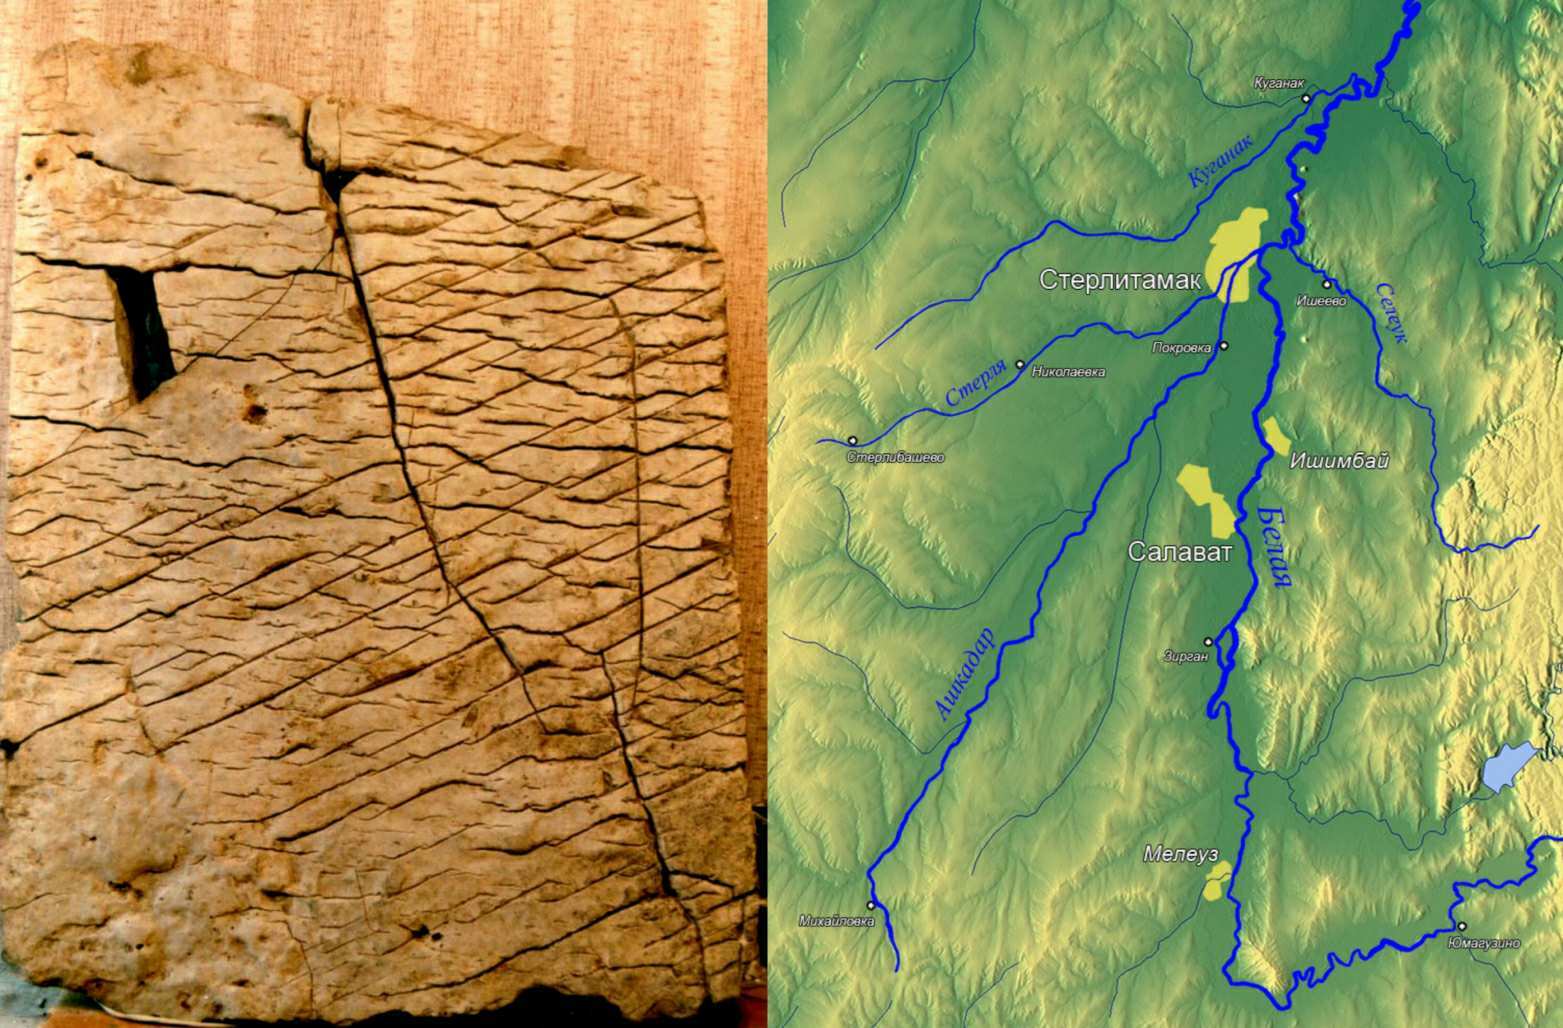 úgy tűnik, hogy a tabletta nagyon pontos topográfiai térképet mutat Baskíriáról, az Ural hegység meghatározott területéről, 1: 1.1 km méretarányban